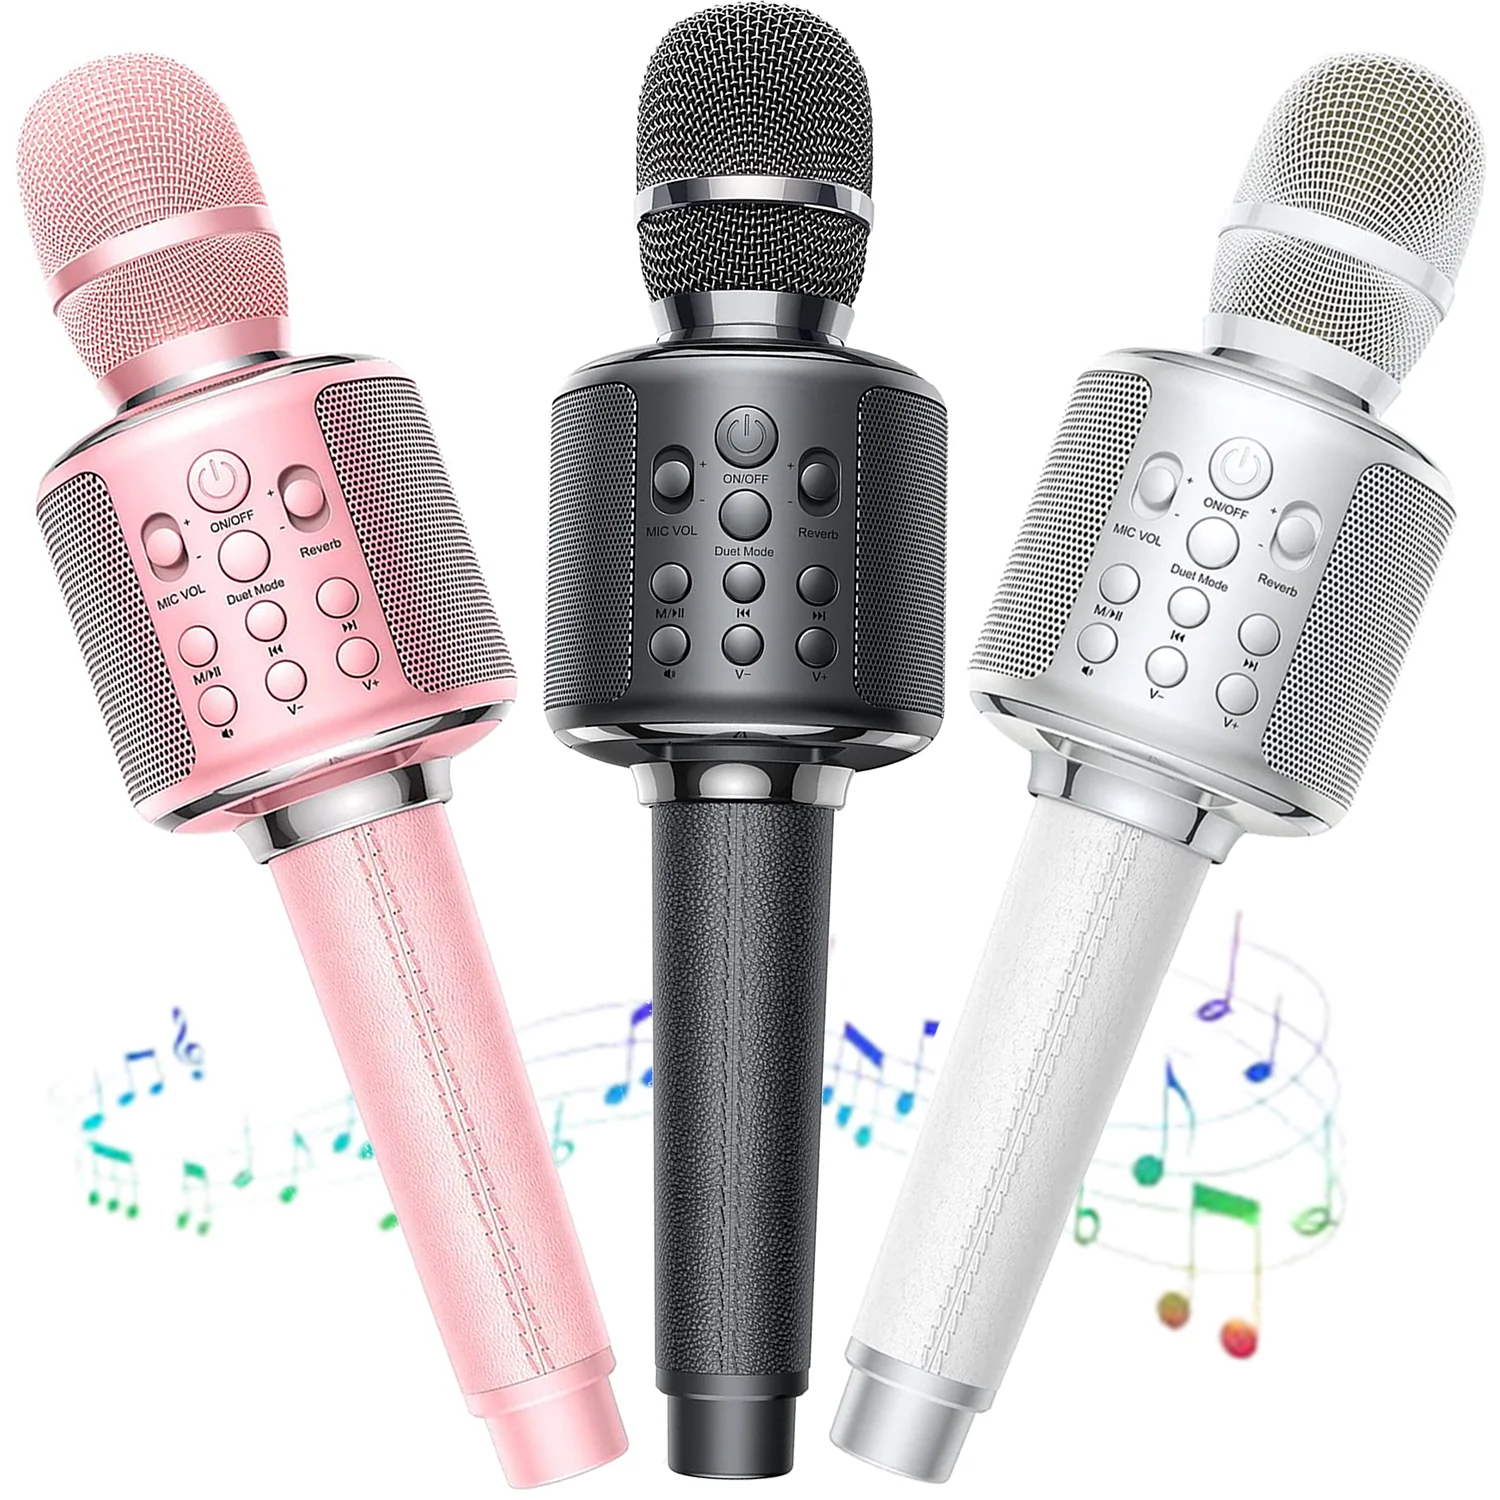 GOODaaa Microphone karaoké Bluetooth pour chanteur/musique et enregistrement portable 3000 mAh Duett Microphone karaoké stéréo sans fil avec haut-parleur Compatible avec Android iOS PC 